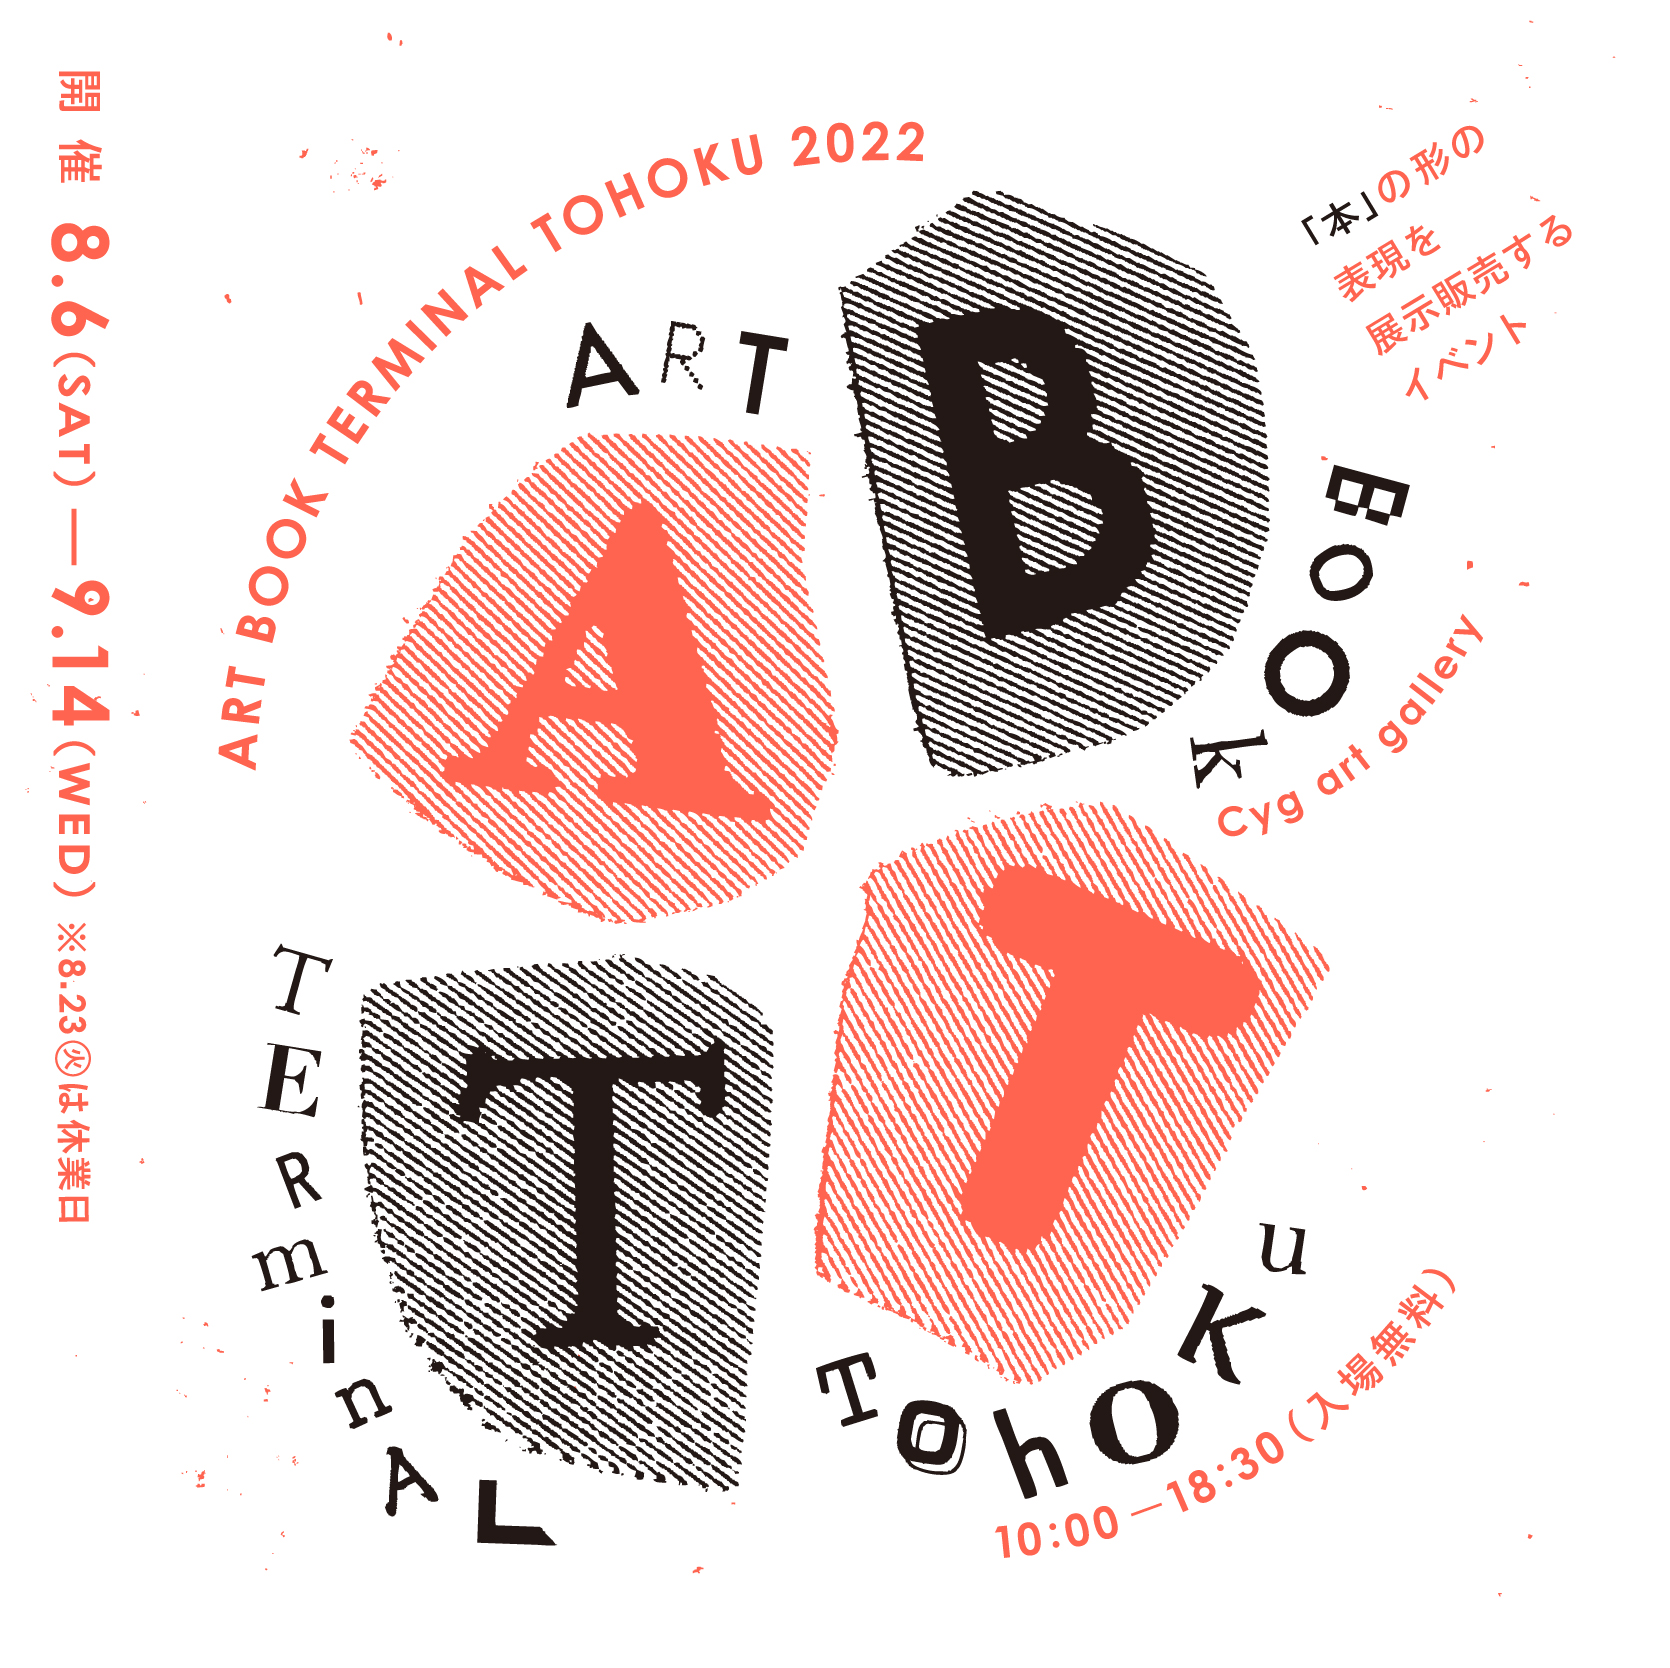 ART BOOK TERMINAL TOHOKU 2022